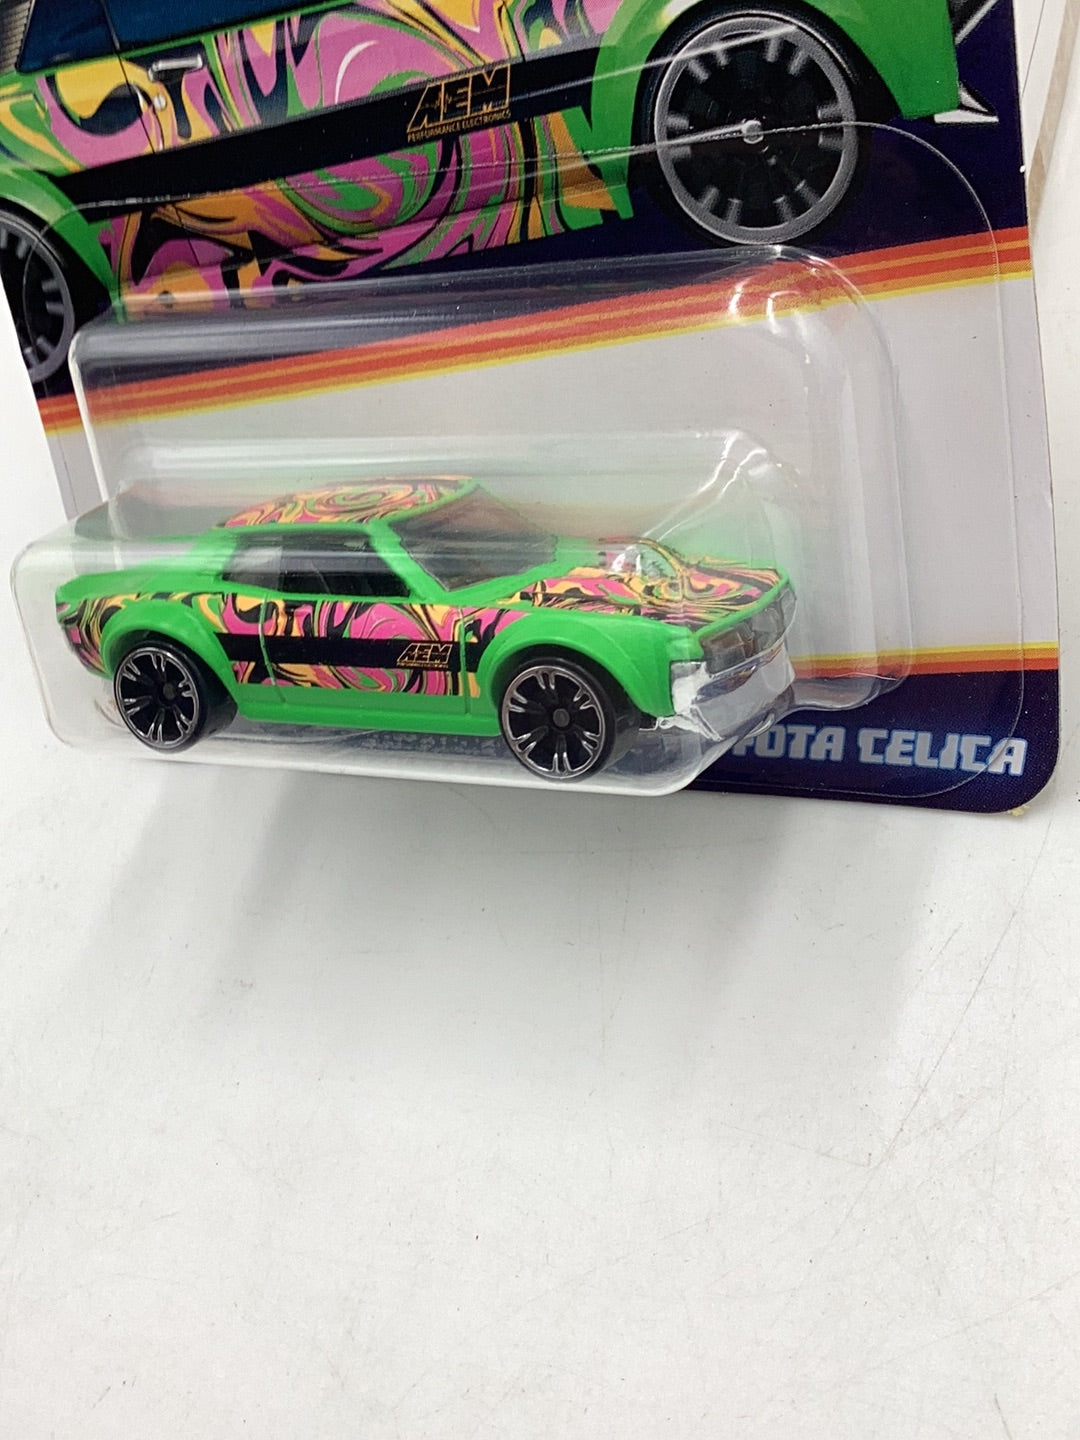 Hot wheels Neon Speeders 70 Toyota Celica 1/8